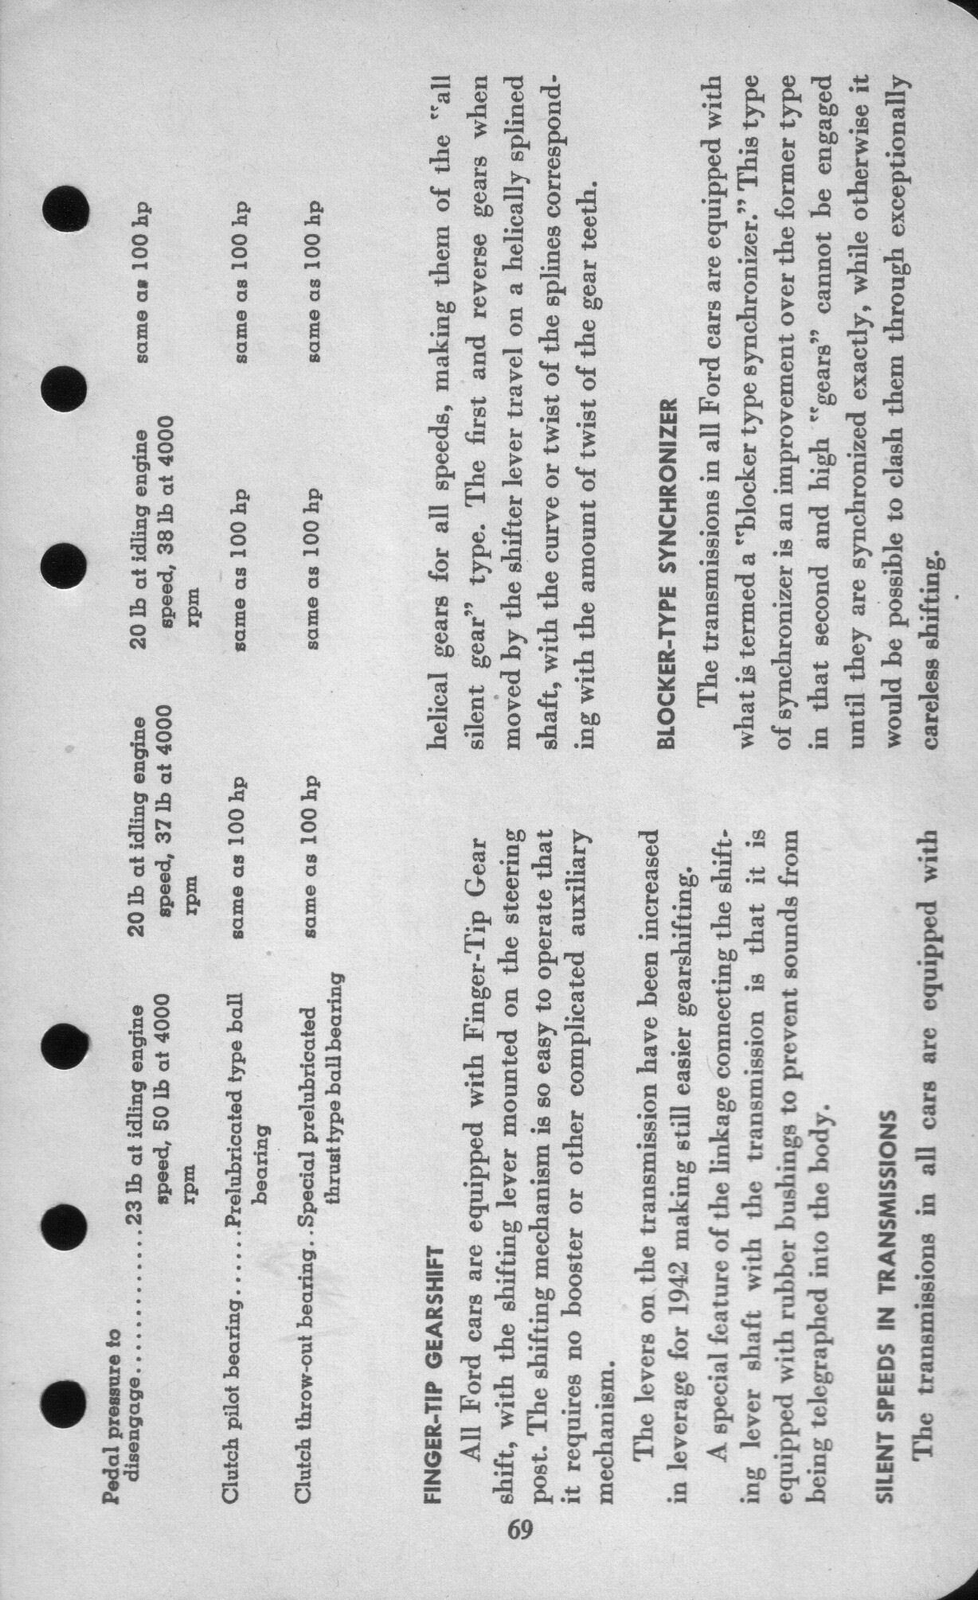 n_1942 Ford Salesmans Reference Manual-069.jpg